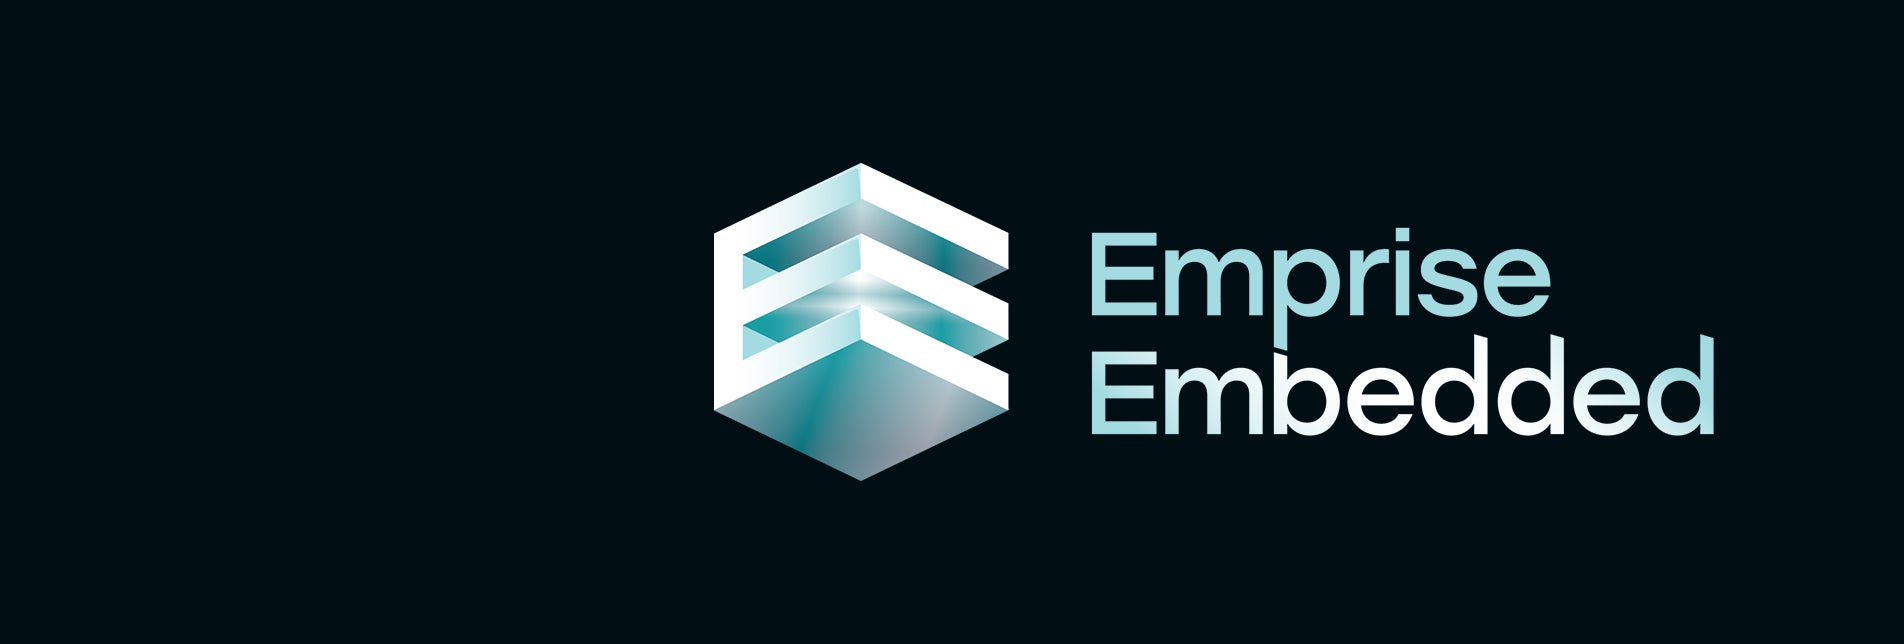 Emprise Embedded logo on dark background